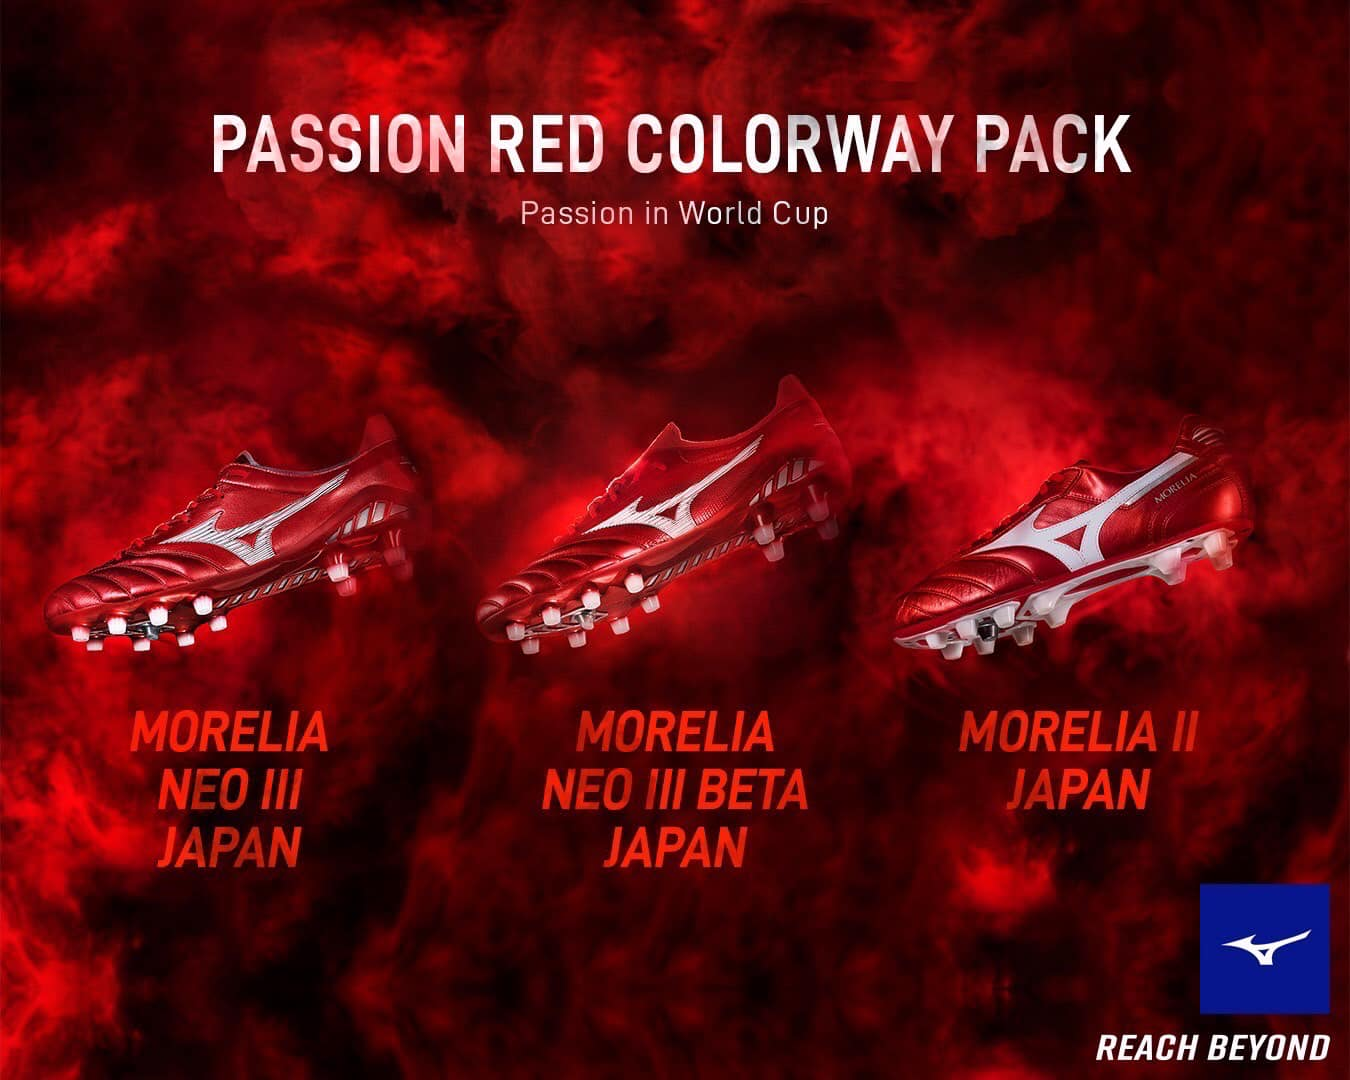 Khám phá bộ sưu tập Mizuno 'Passion Red' quyến rũ - Chất lượng chuẩn Nhật